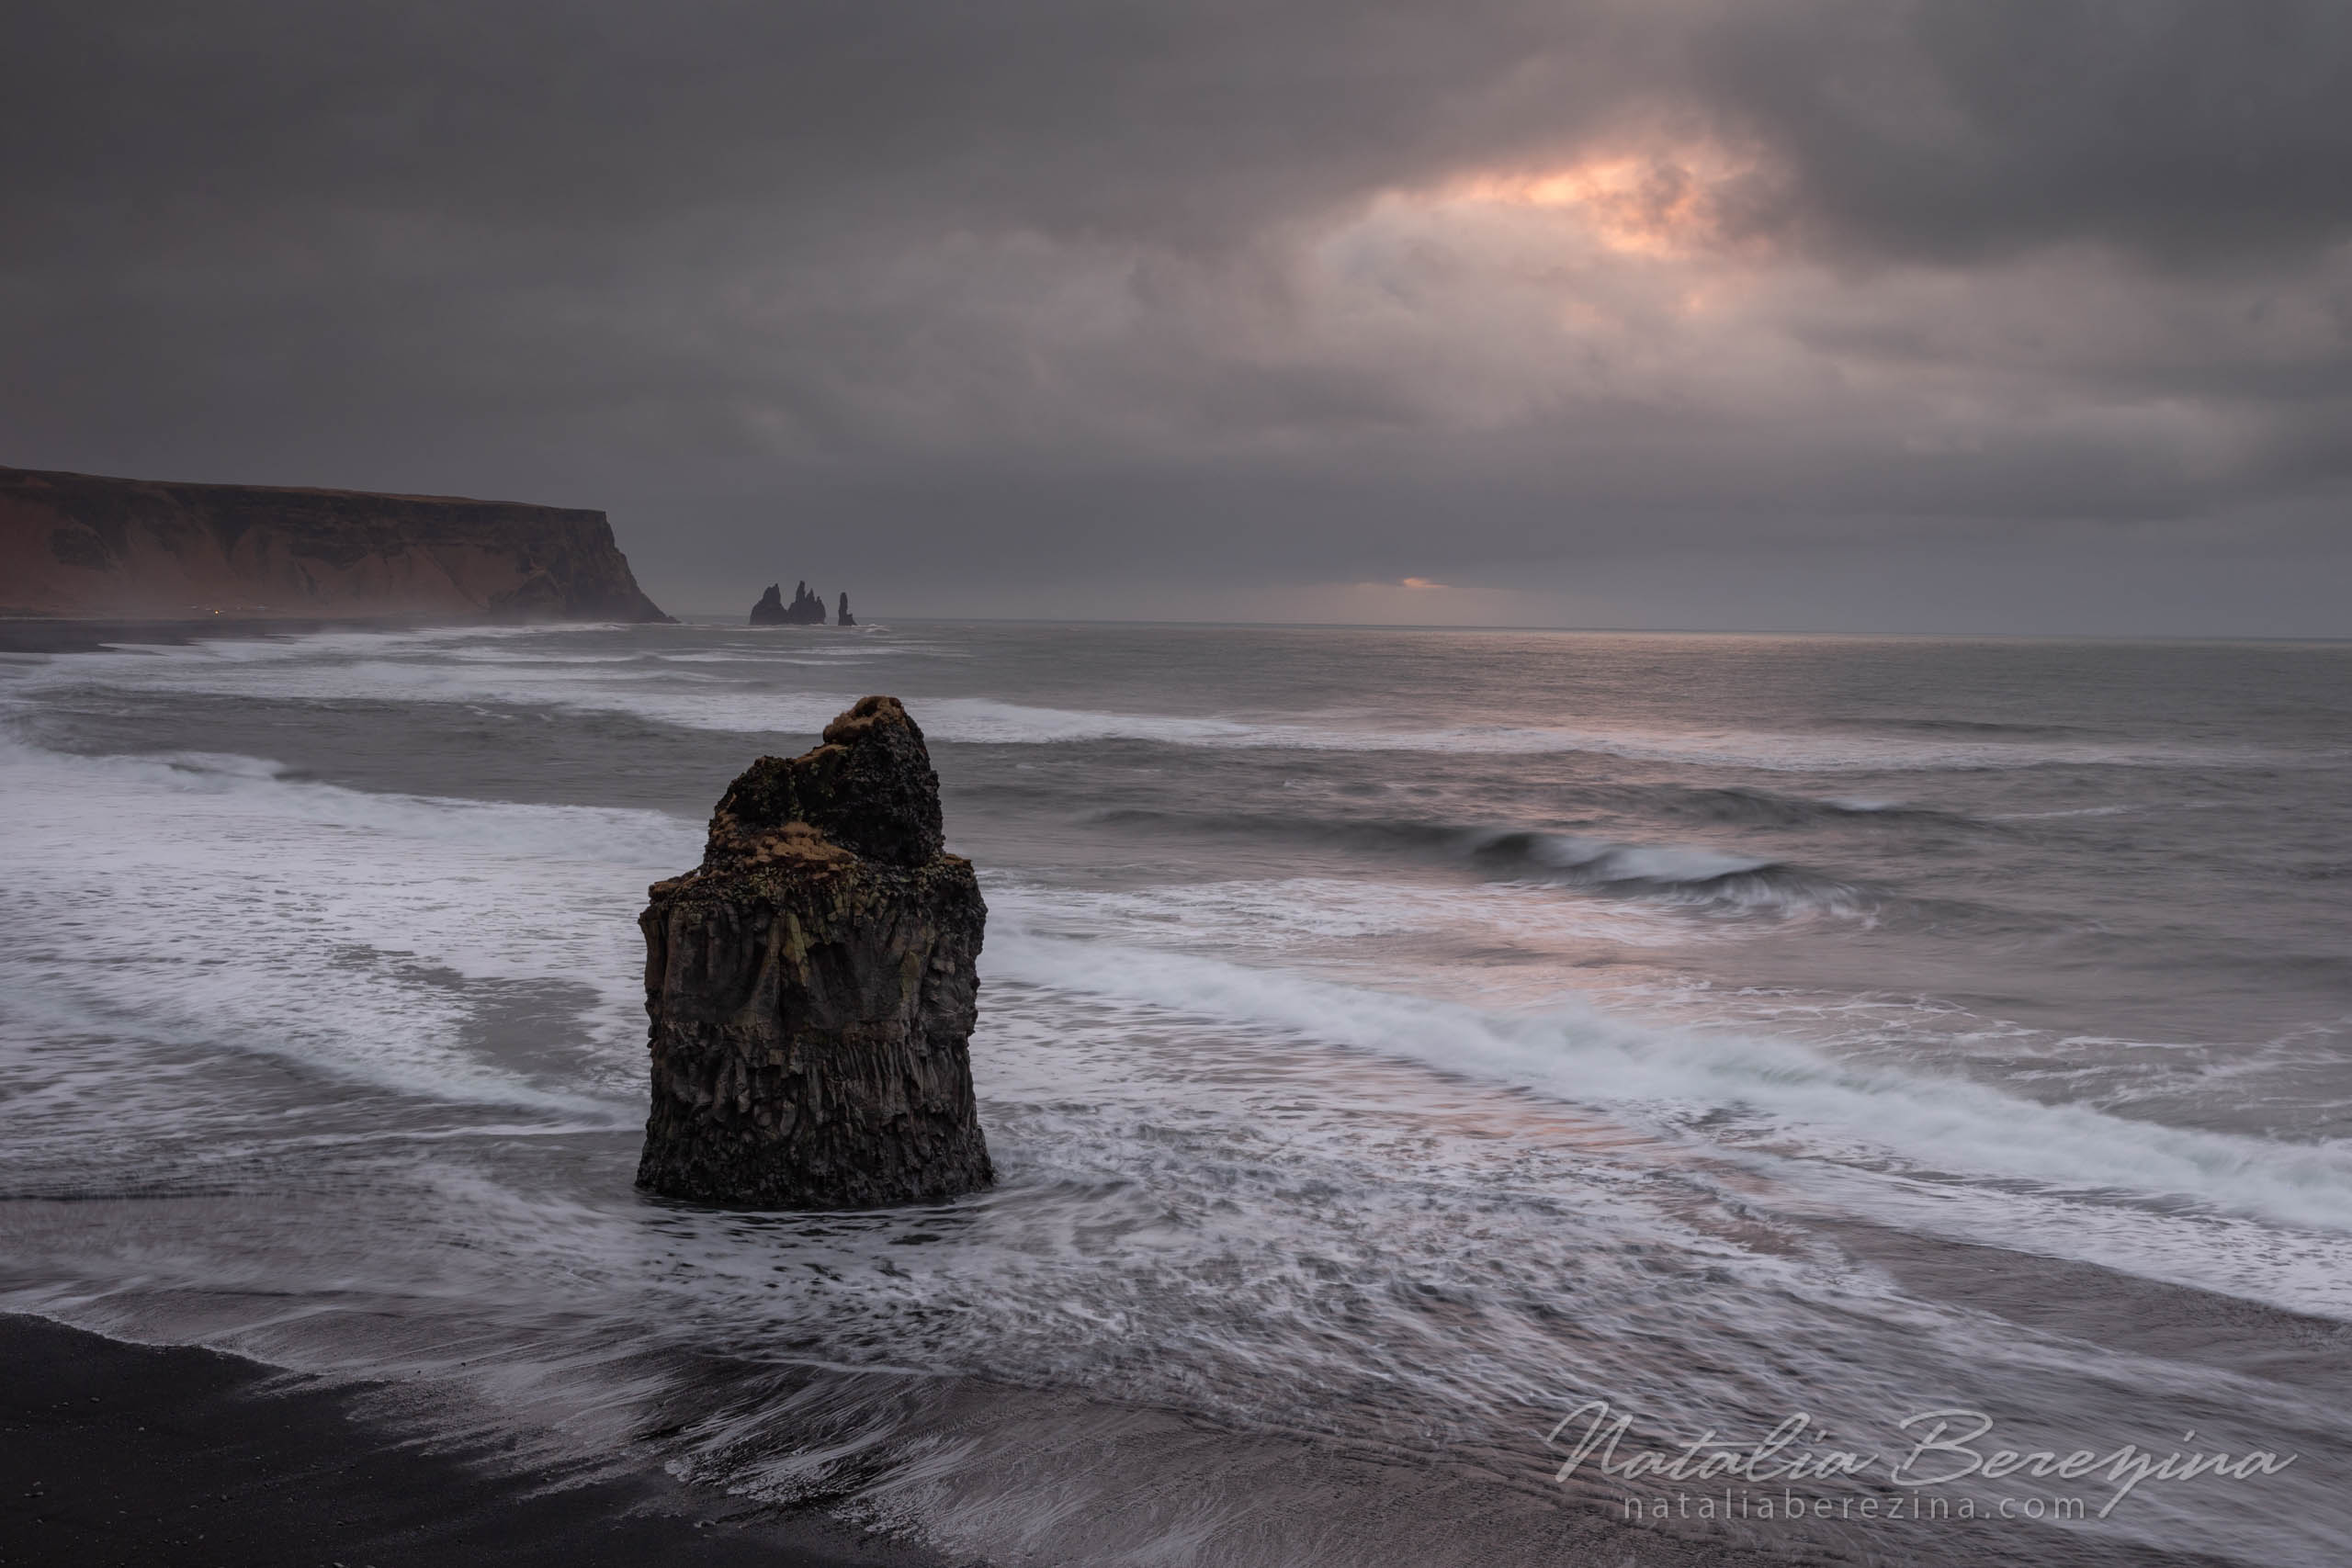 Iceland, landscape, mountains, sea view, sunlight, wave IC1-NBDK1U1040 - Iceland - Natalia Berezina Photography